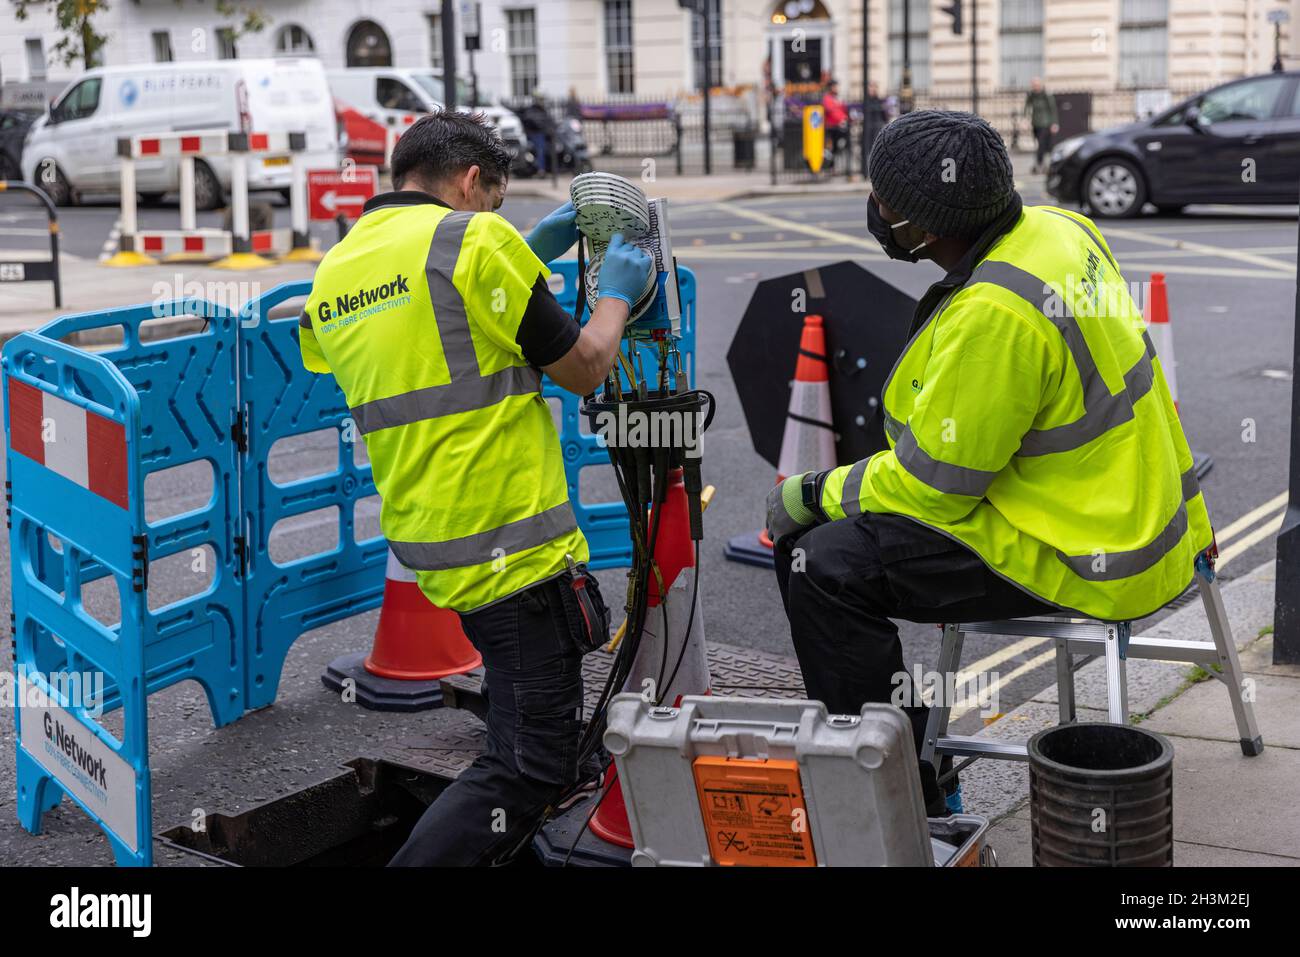 « G.Network' ingénieurs connectant des câbles réseau Internet haut débit à fibre optique à l'intérieur d'un boîtier « nœud », dans la région de Fitzrovia, Londres, Angleterre, Royaume-Uni Banque D'Images